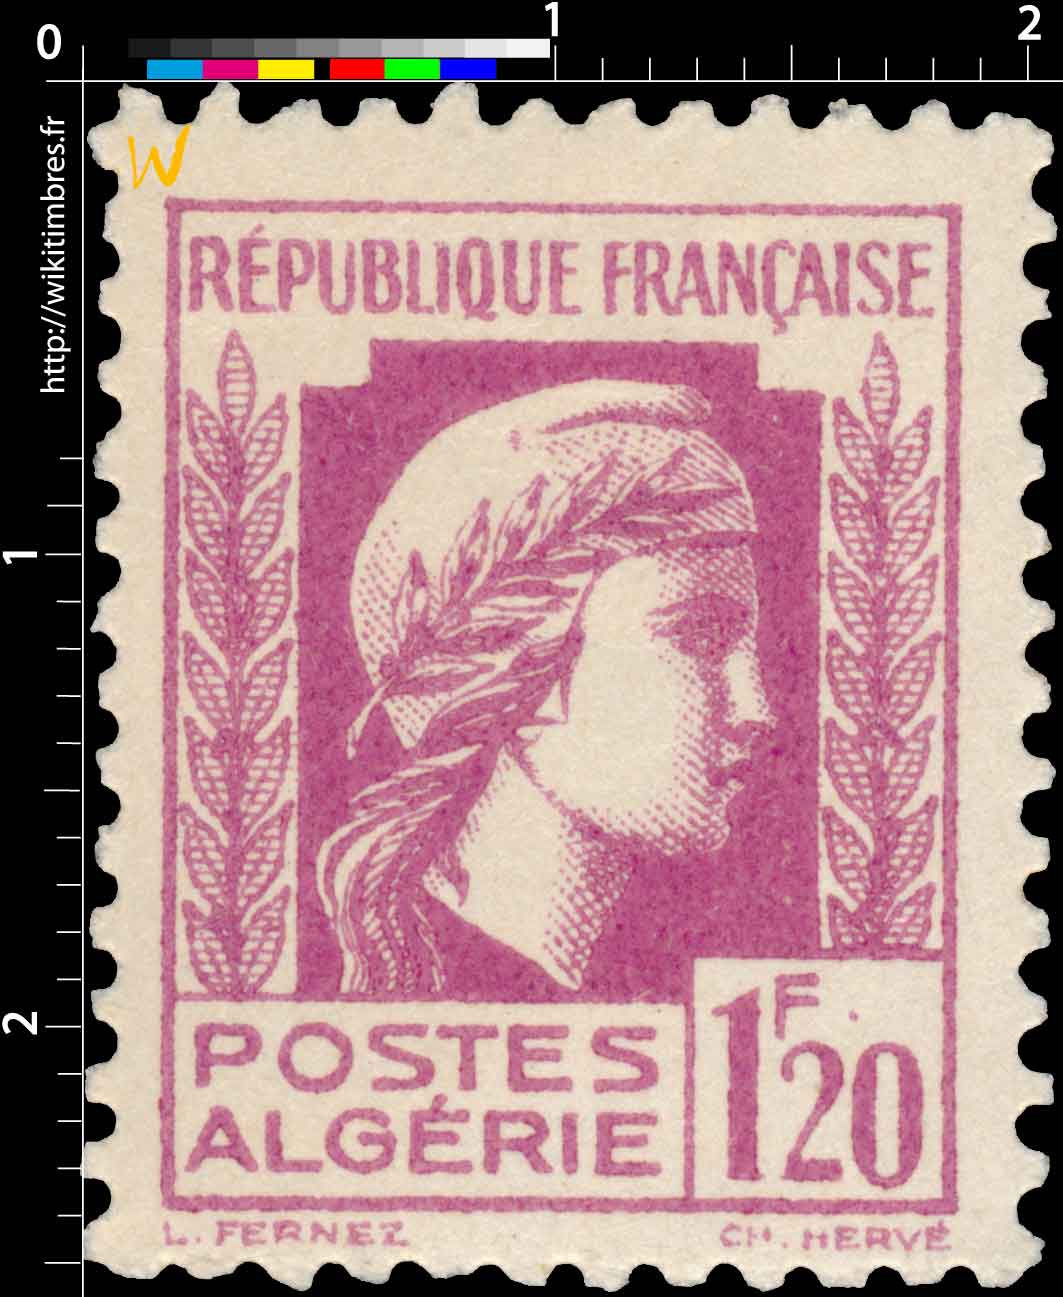 Algérie - Type Marianne d'Alger